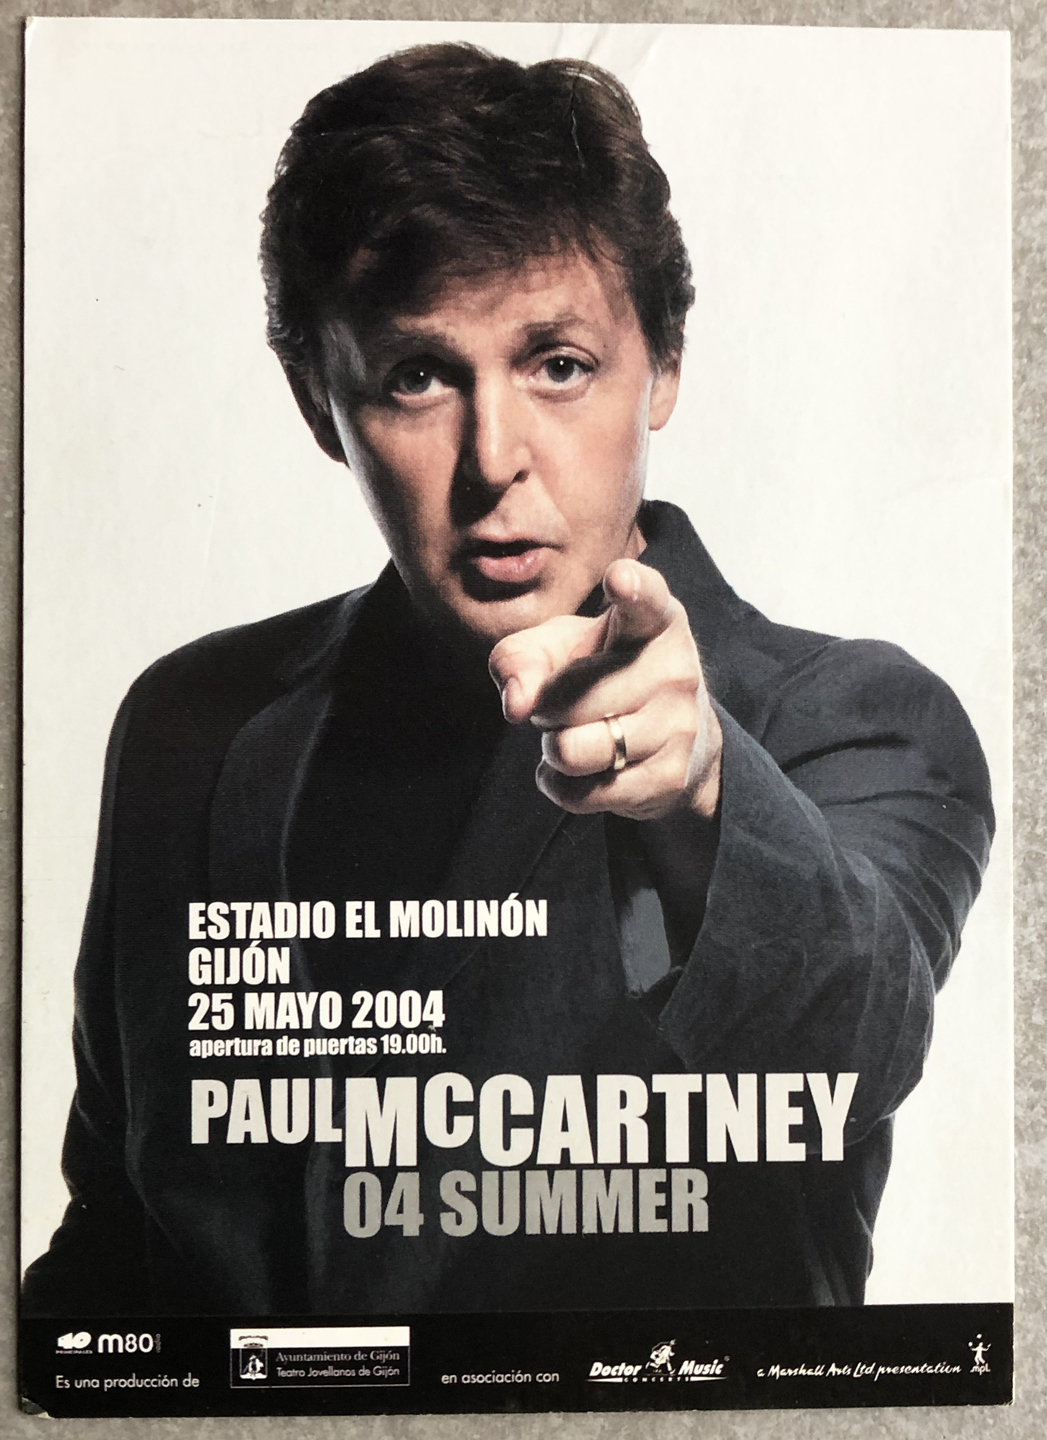 Primary image for Paul McCartney 04 Summer Concert Promo Card for Gijon Spain